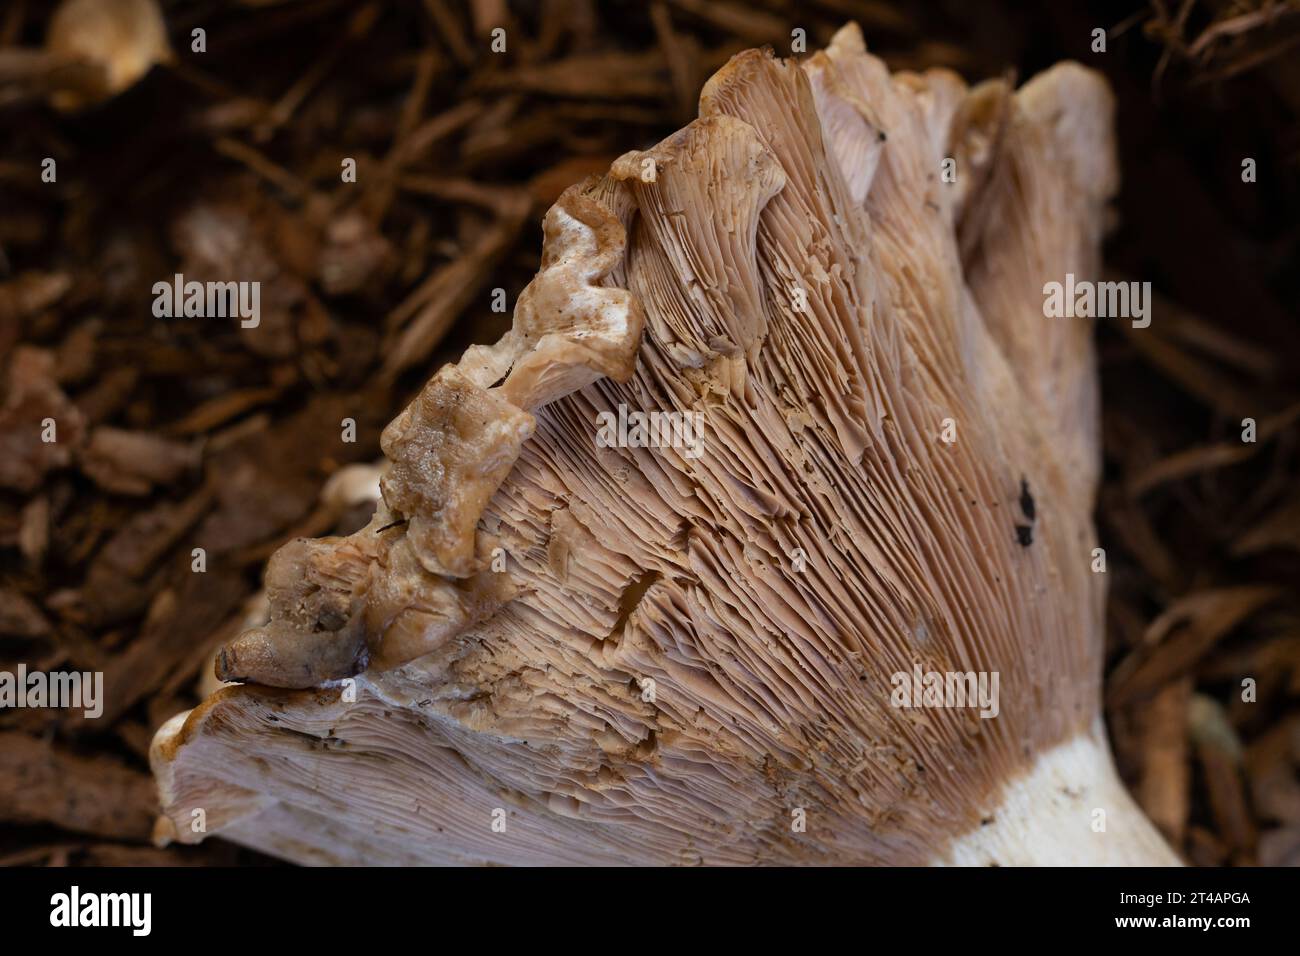 Lactarius controversus mushroom, close up Stock Photo